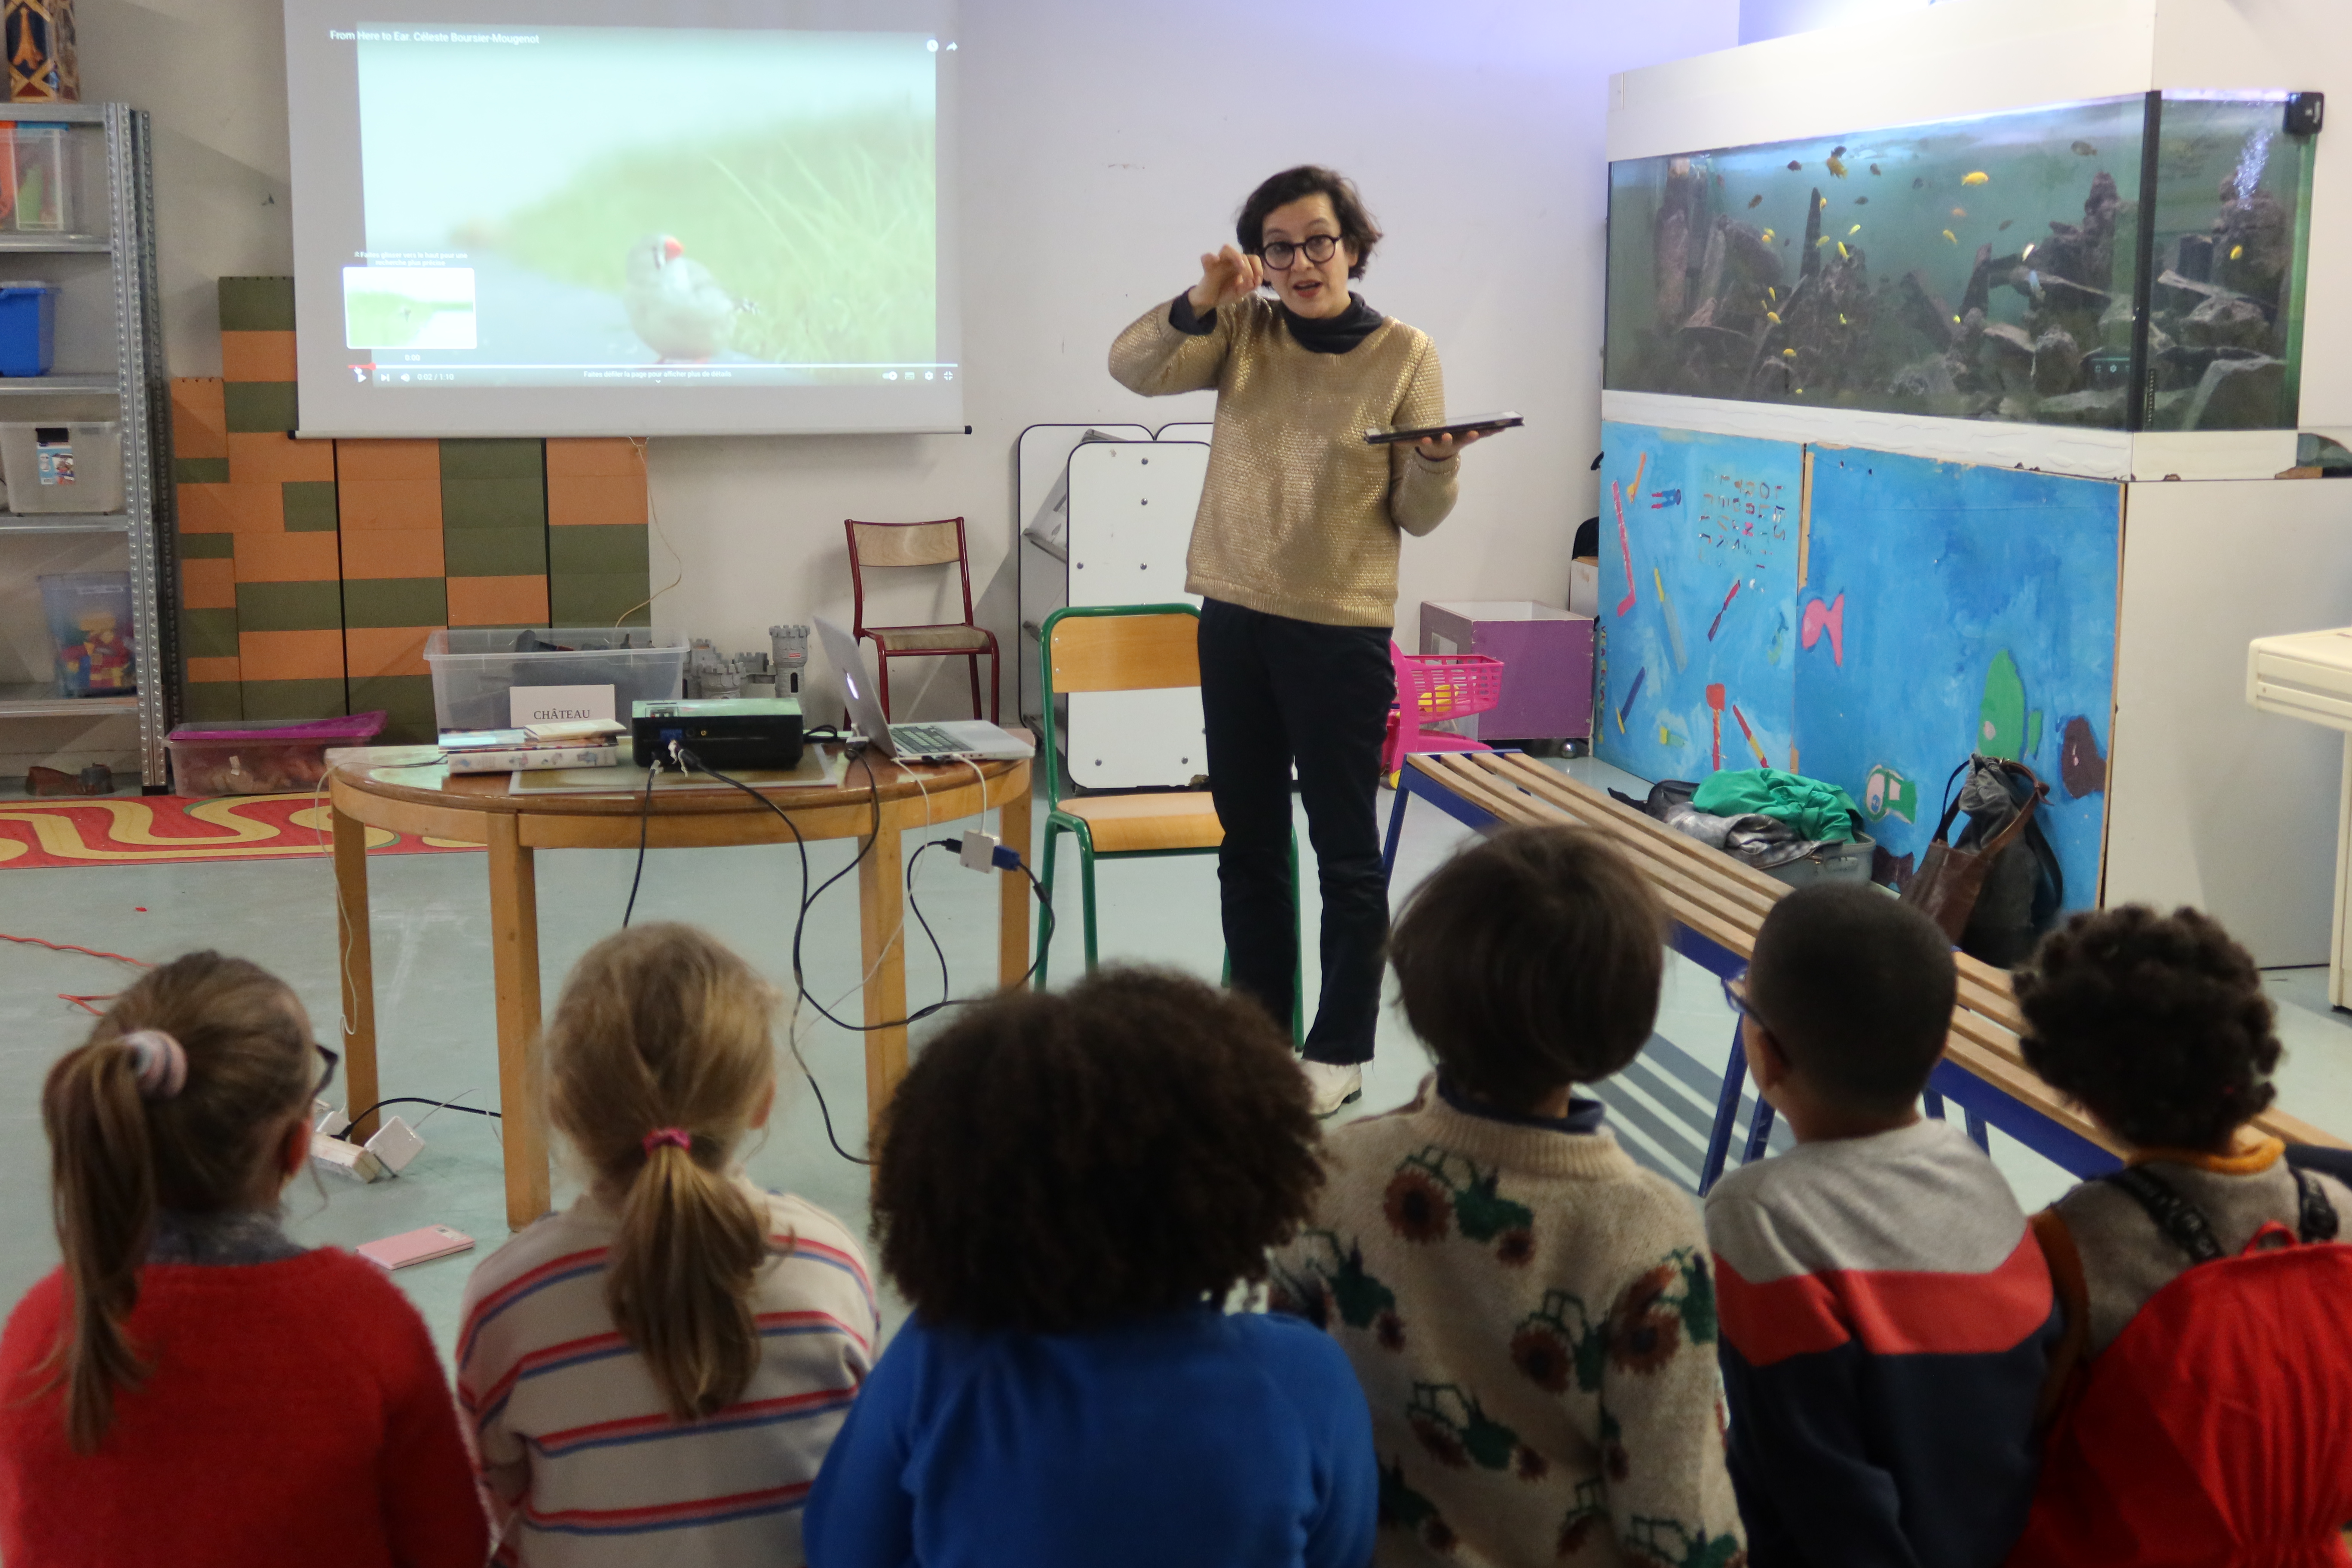 Fabienne Audéoud se tient face à un groupe d'enfants assis sur un banc. Elle tient une tablette à la main et est en train de remonter ses lunettes. Derrière elle est projetée sur un écran la vidéo d'une œuvre.